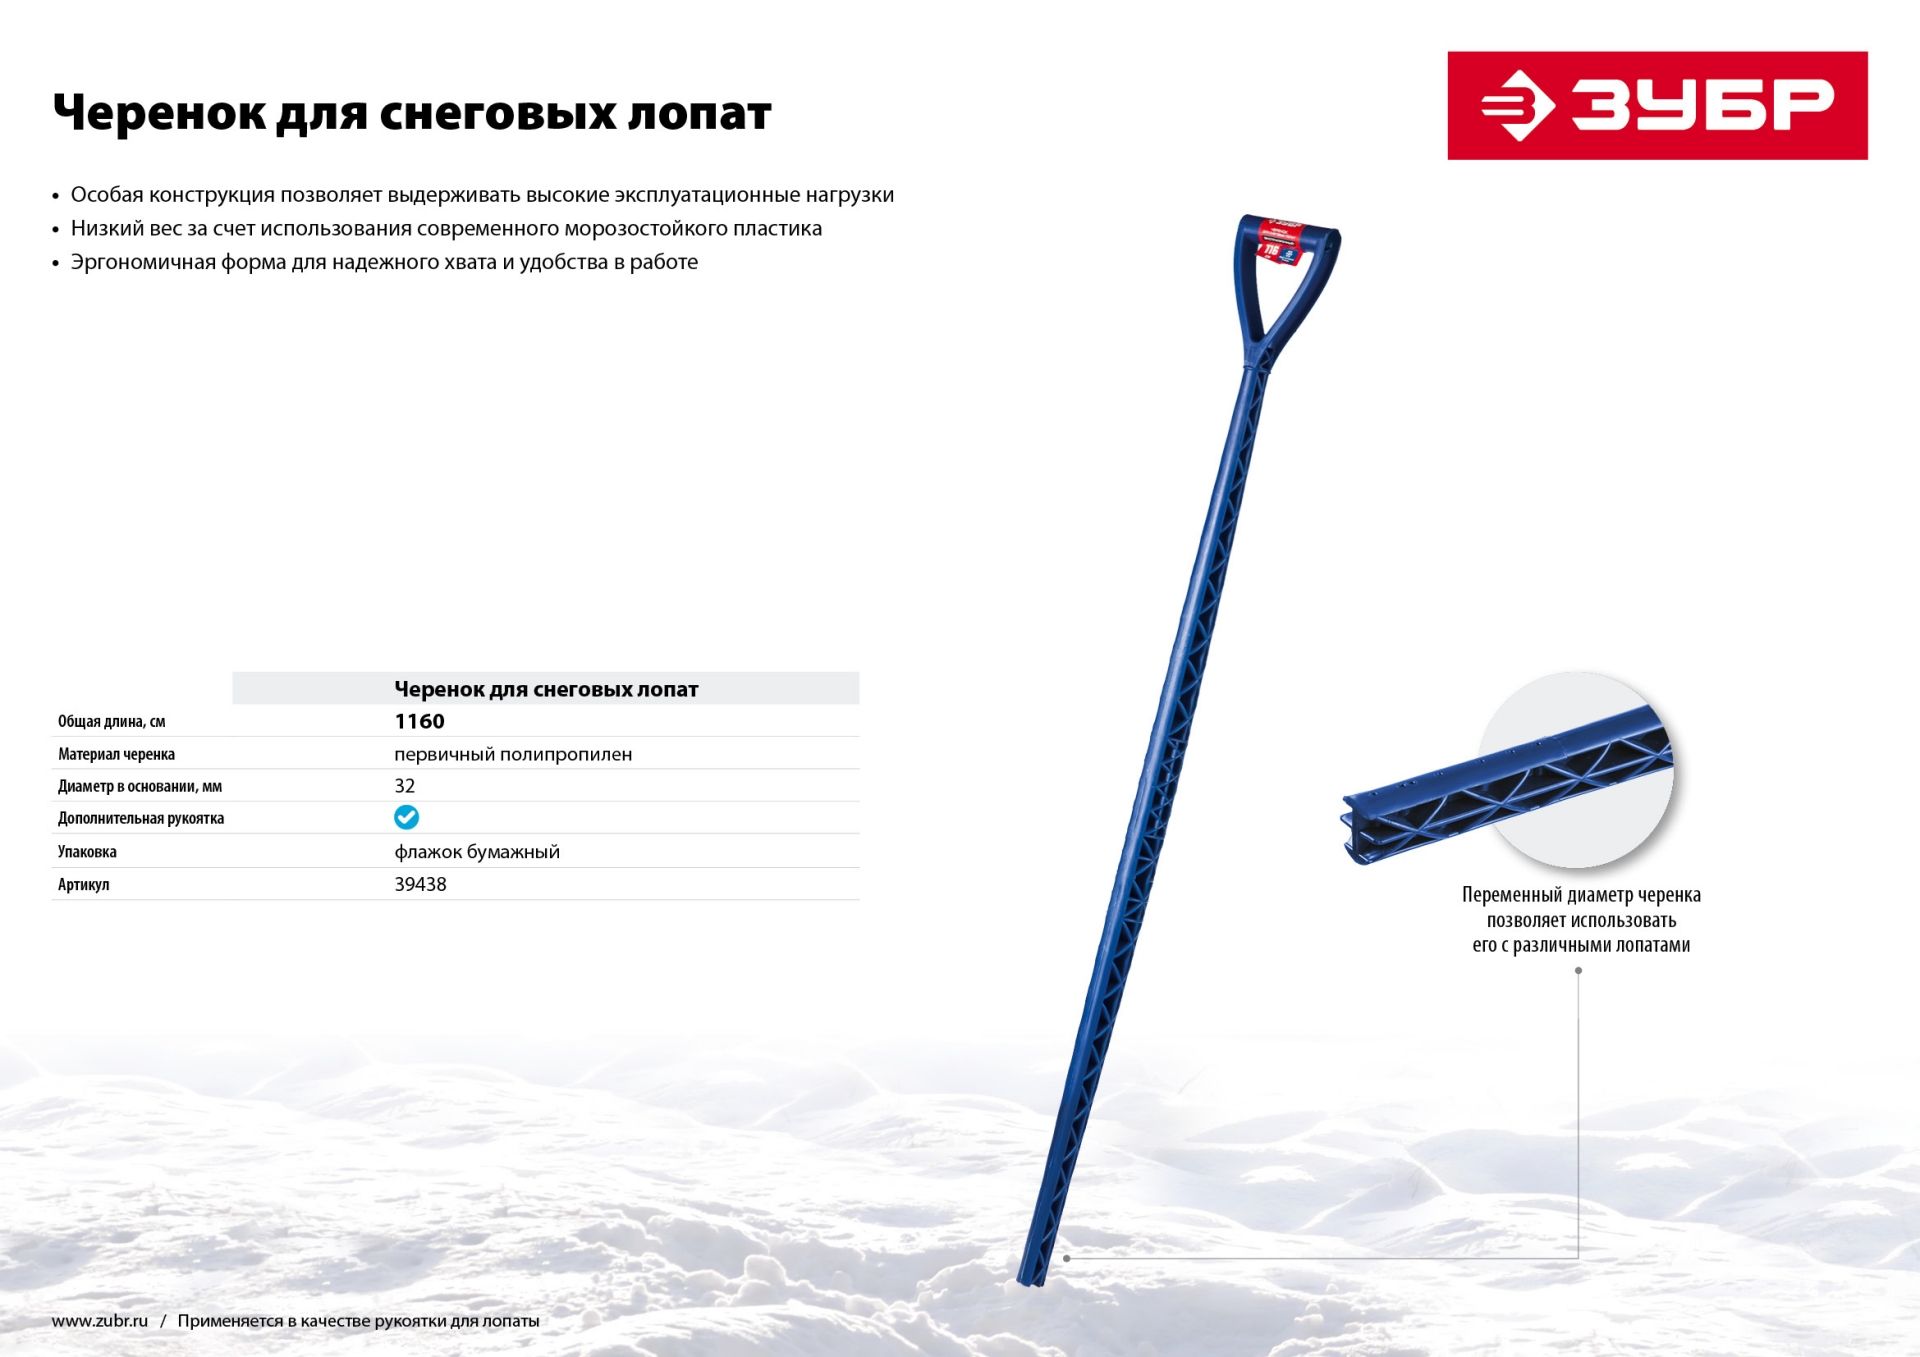 Черенок экстрапрочный пластиковый морозостойкий для снеговых лопат с рукояткой,цвет синий.ЗУБР.длина -1160 мм,